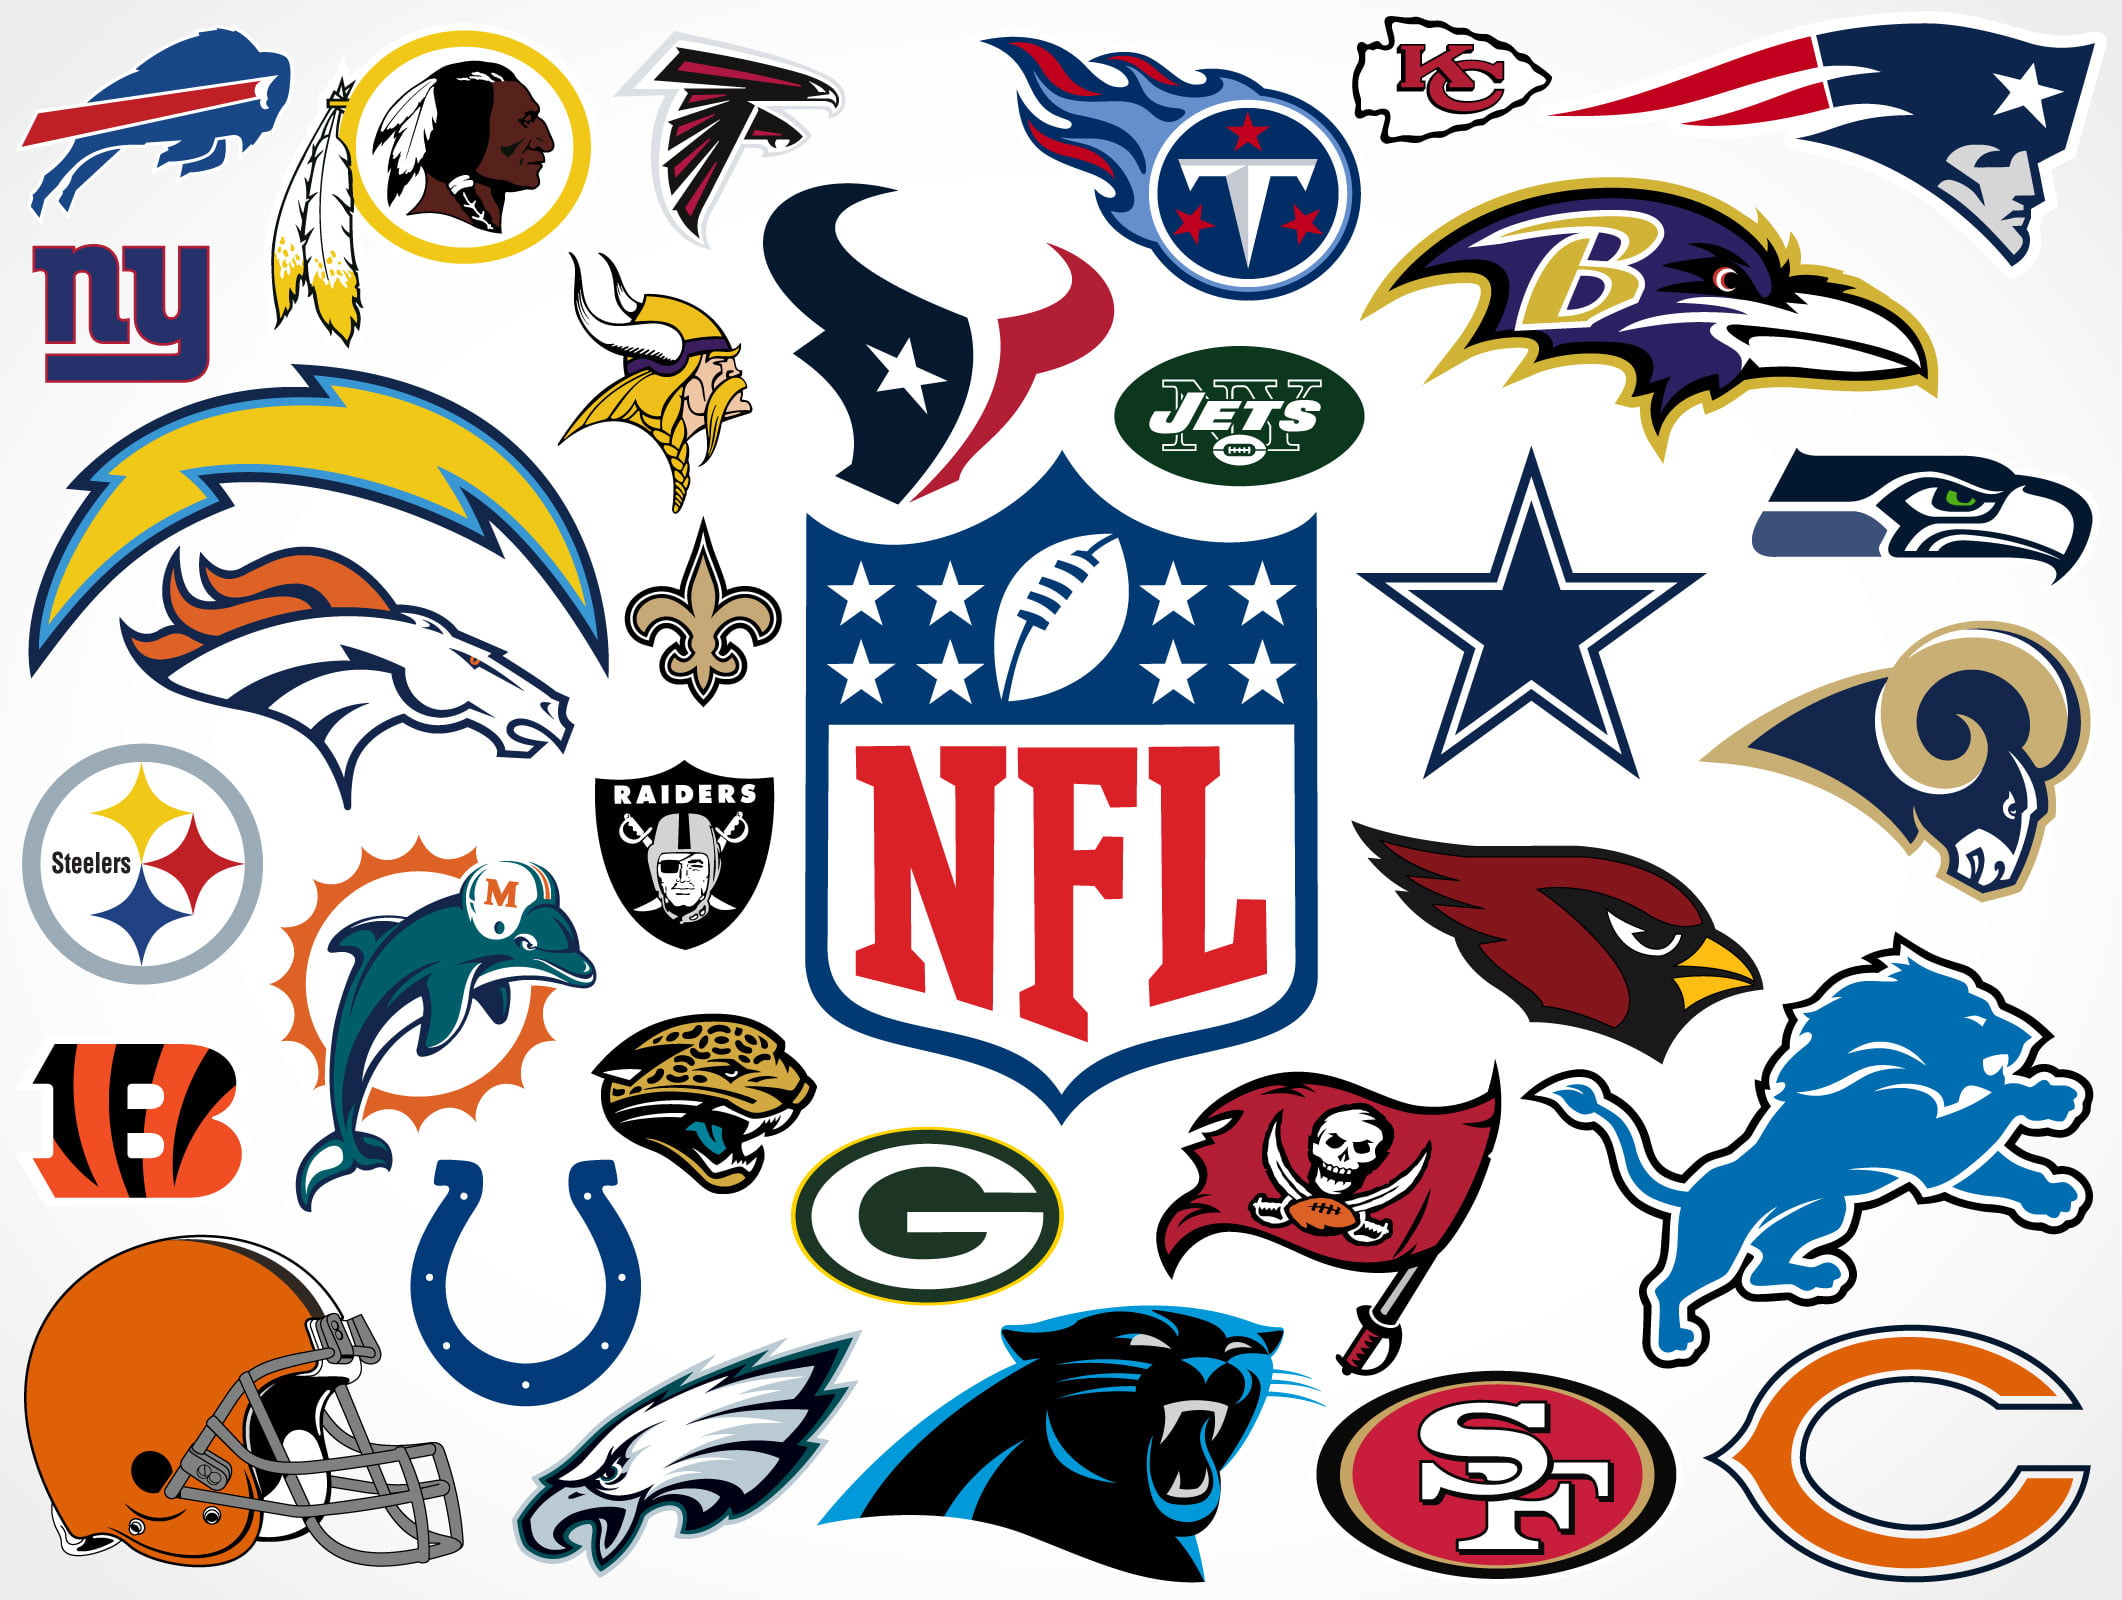 https://www.screenprintsupplies.com/wp-content/uploads/2021/09/NFL-logos.jpg